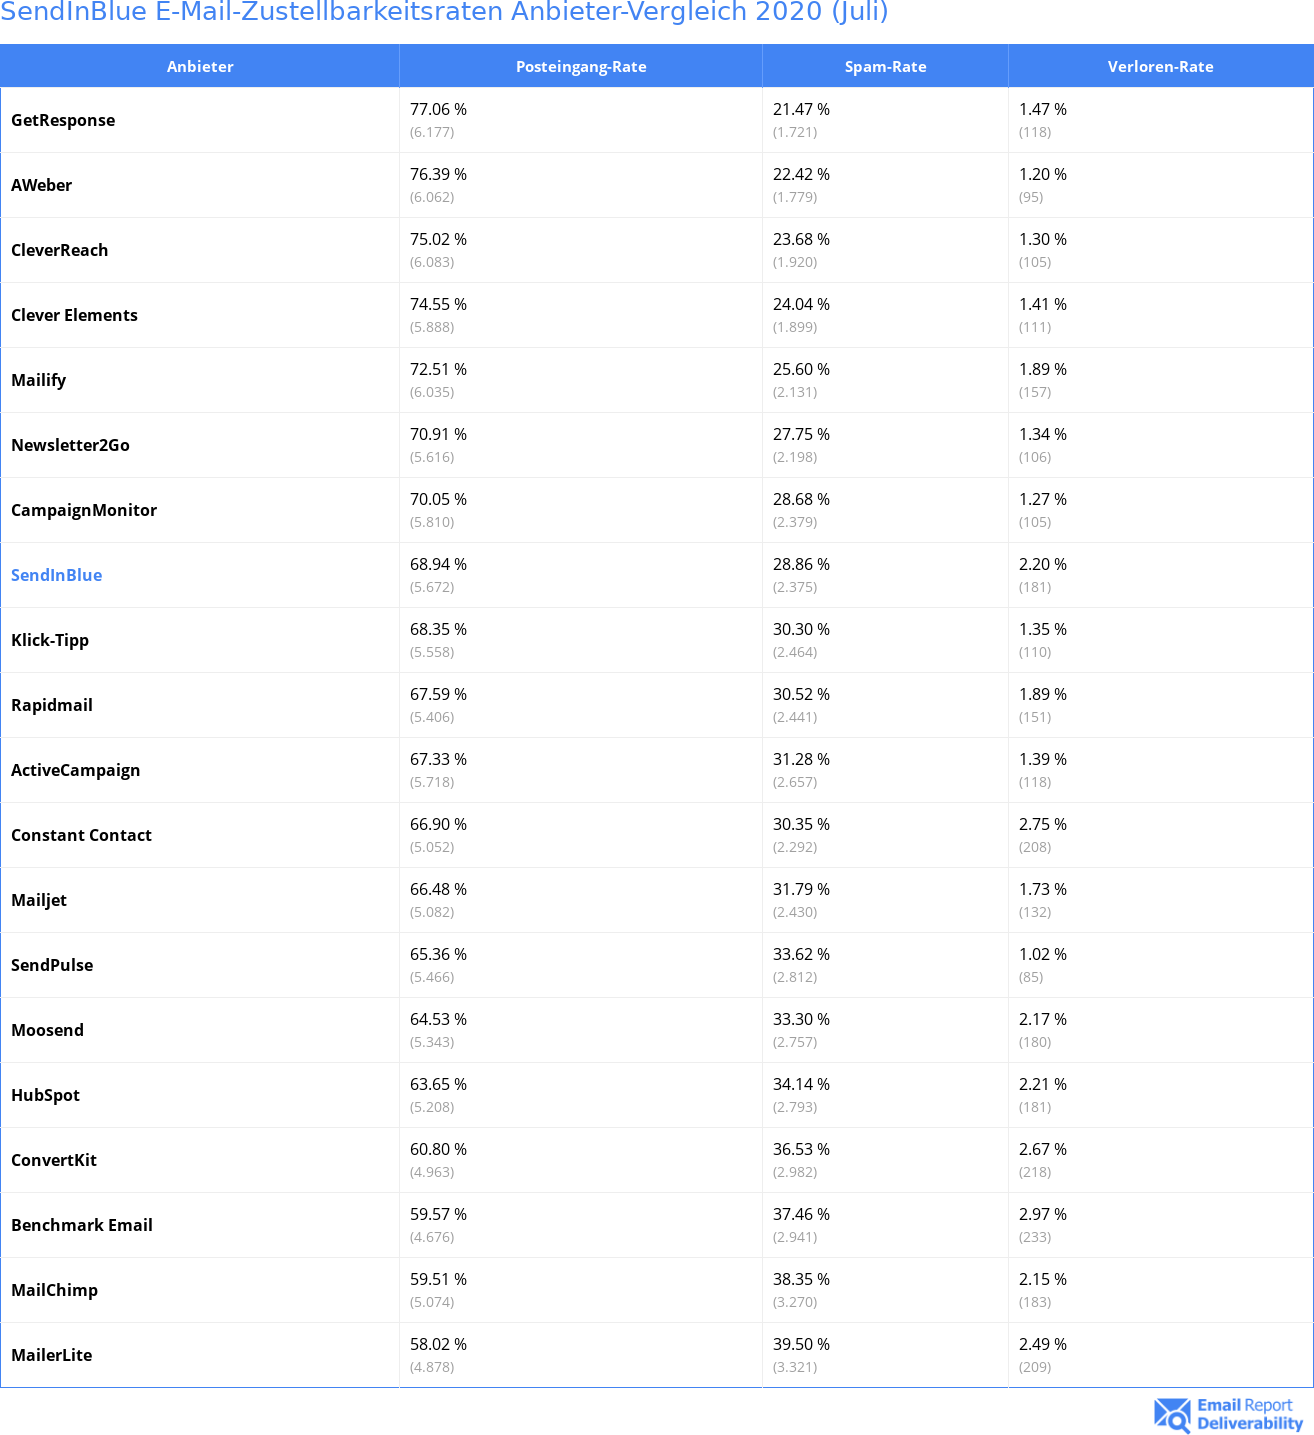 SendInBlue E-Mail-Zustellbarkeitsraten Anbieter-Vergleich 2020 (Juli)